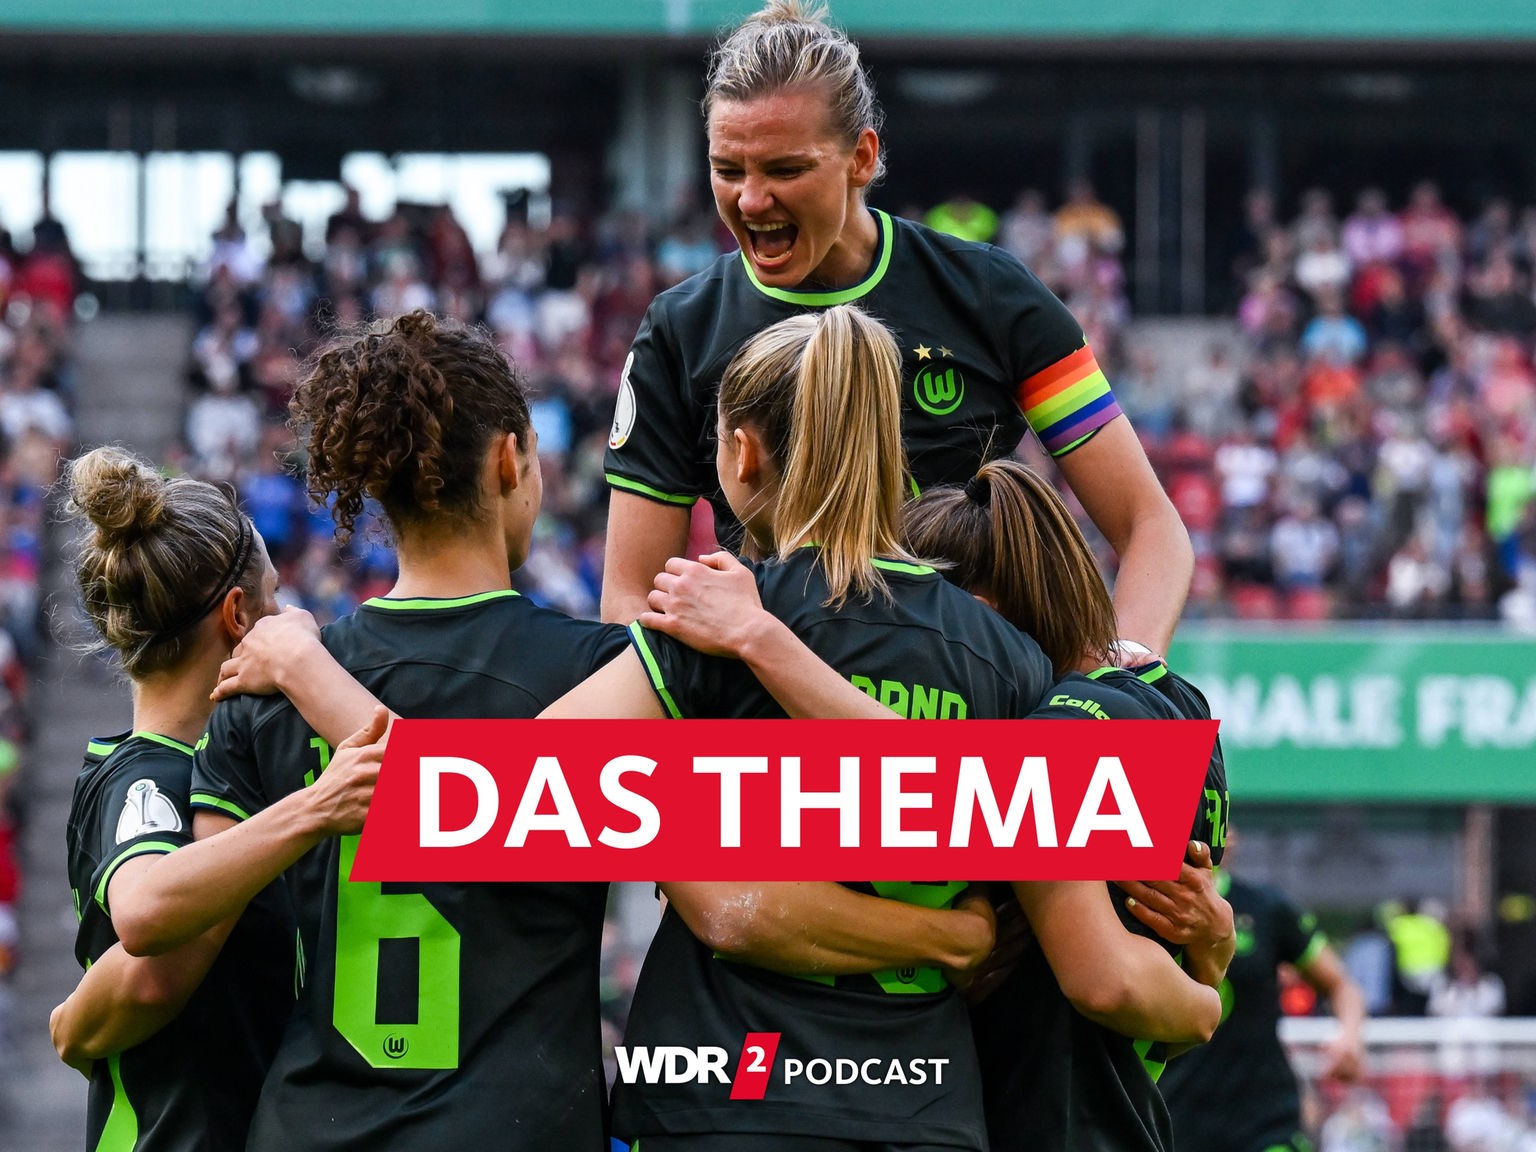 Zuschauerrekord beim DFB-Pokalfinale der Frauen - WDR 2 Das Thema - WDR 2 - Podcasts und Audios - Mediathek